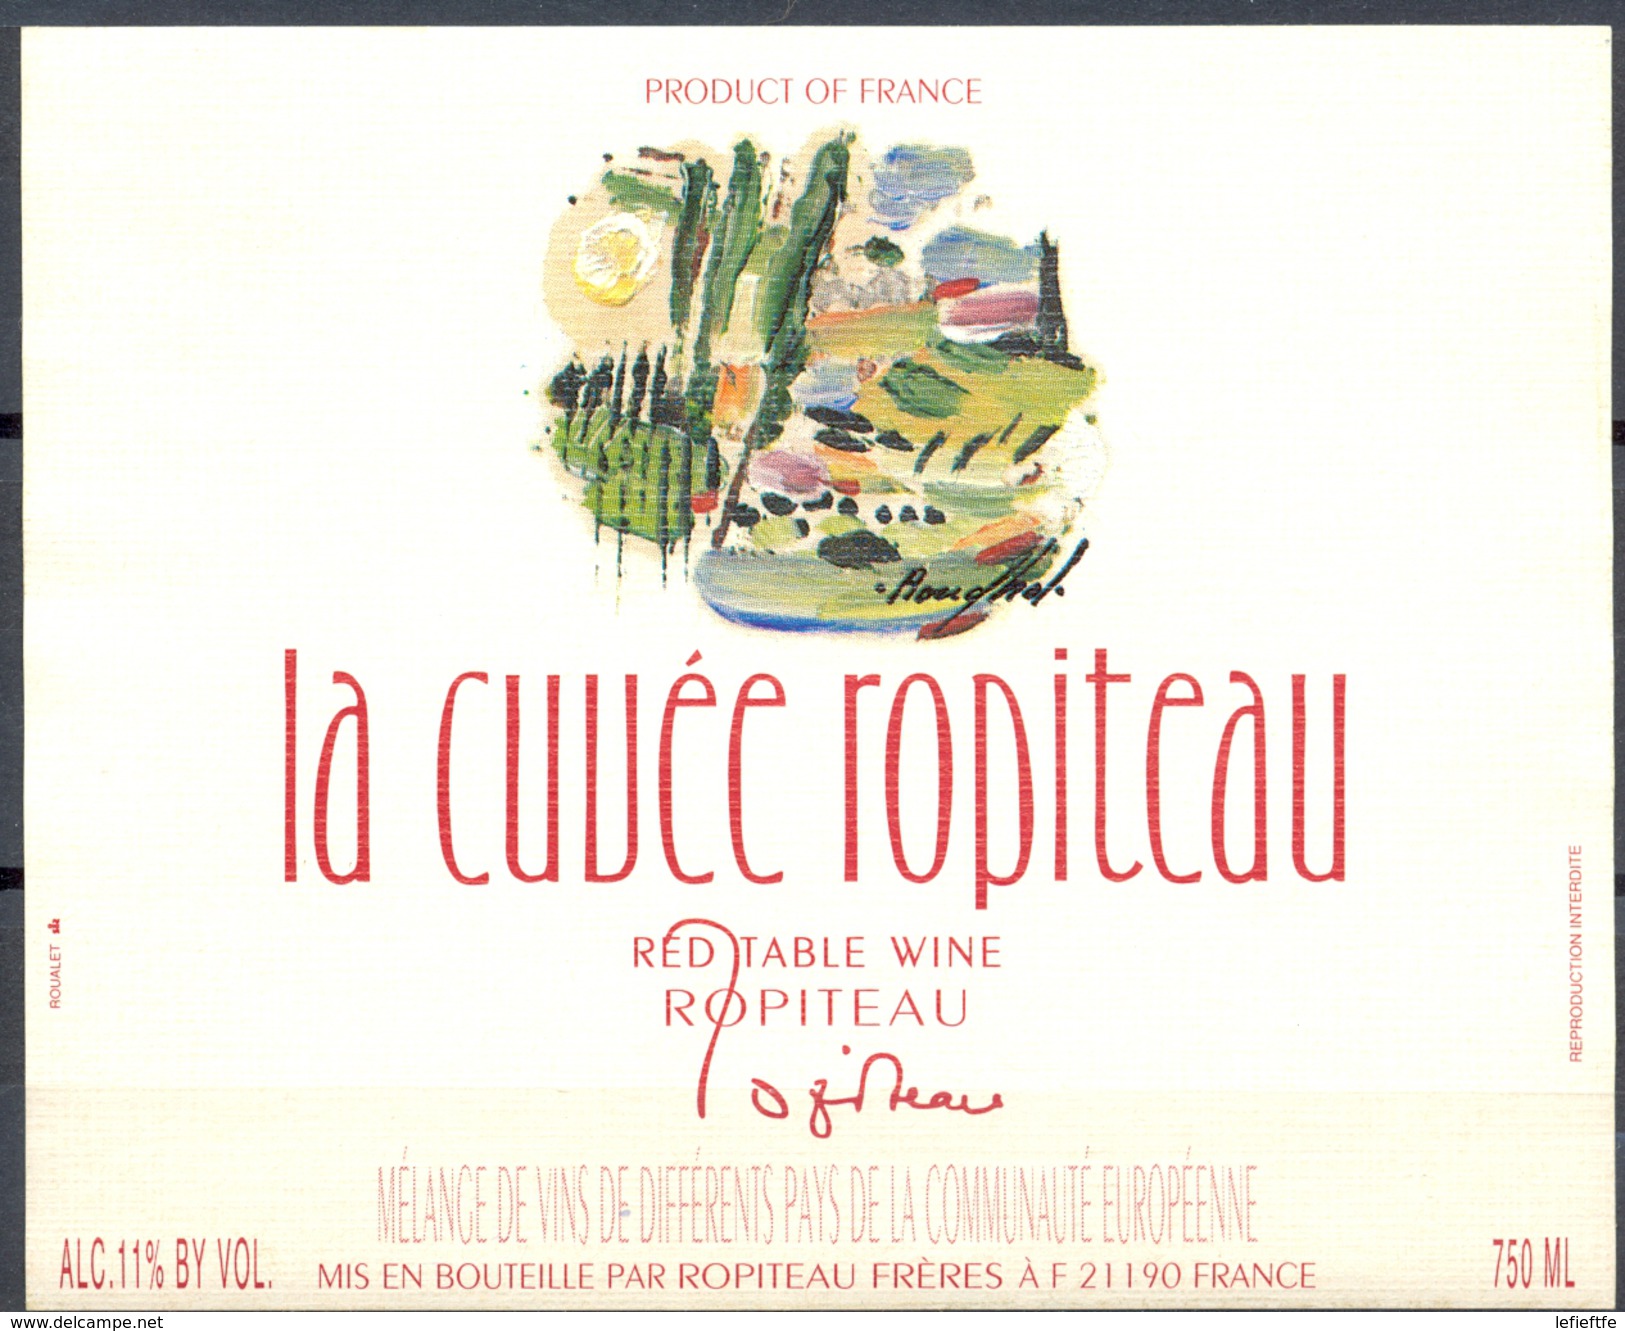 057 - La Cuvée Ropiteau  - Red Table Wine - Mélange De Différents Vins De La Communauté Europénne - Robiteau Frères - Red Wines